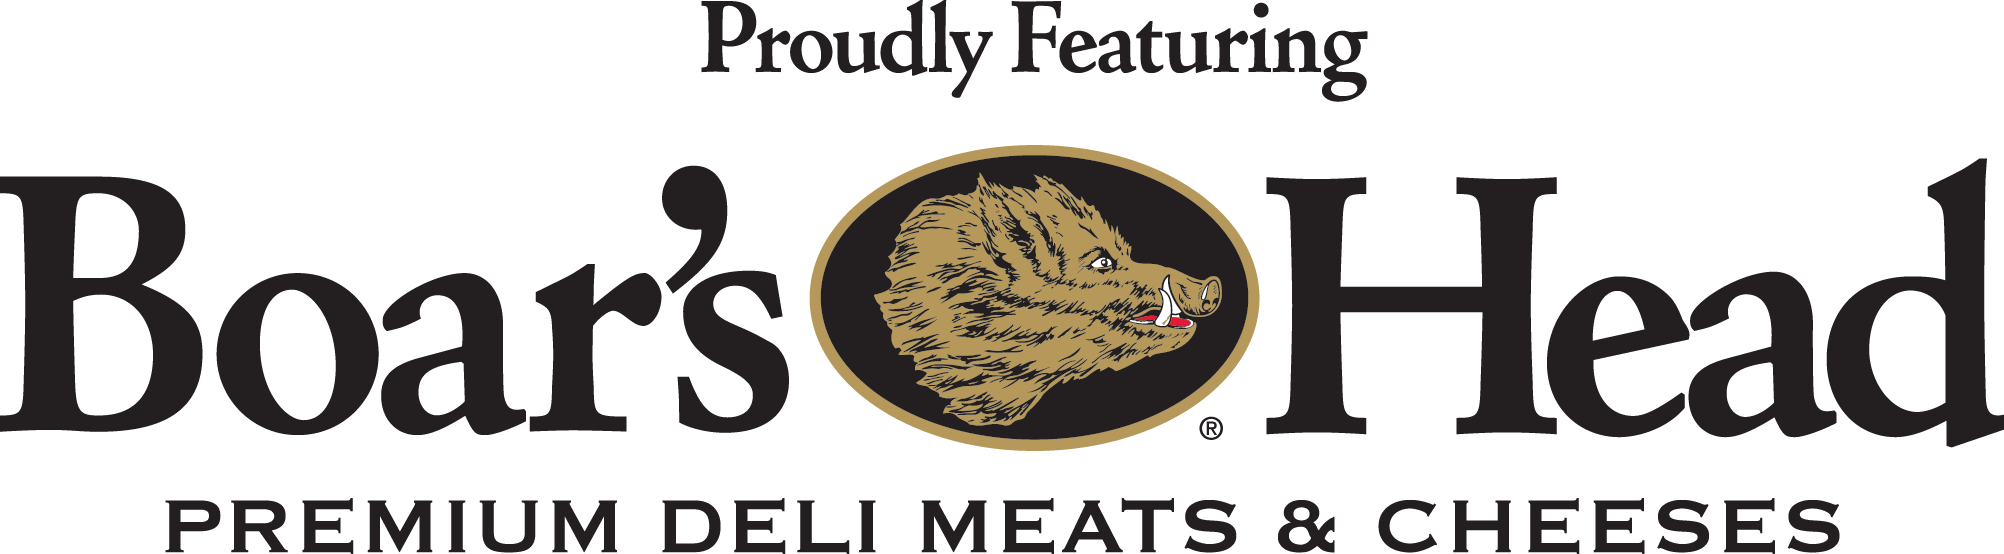 We serve Boars Head meats.